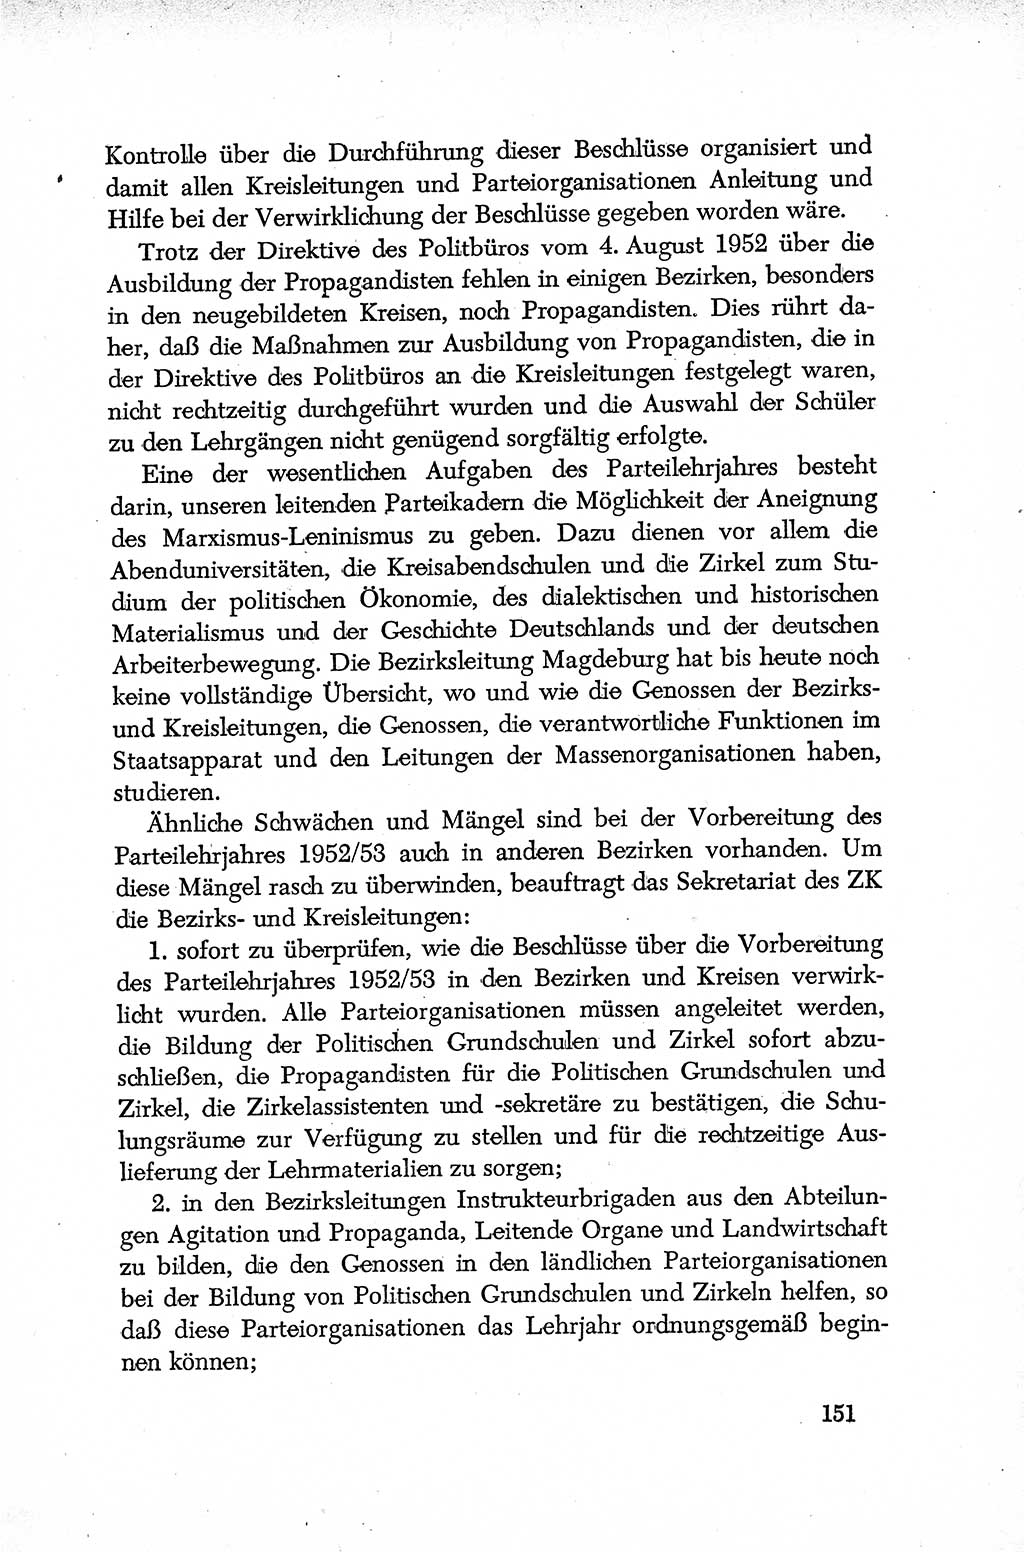 Dokumente der Sozialistischen Einheitspartei Deutschlands (SED) [Deutsche Demokratische Republik (DDR)] 1952-1953, Seite 151 (Dok. SED DDR 1952-1953, S. 151)